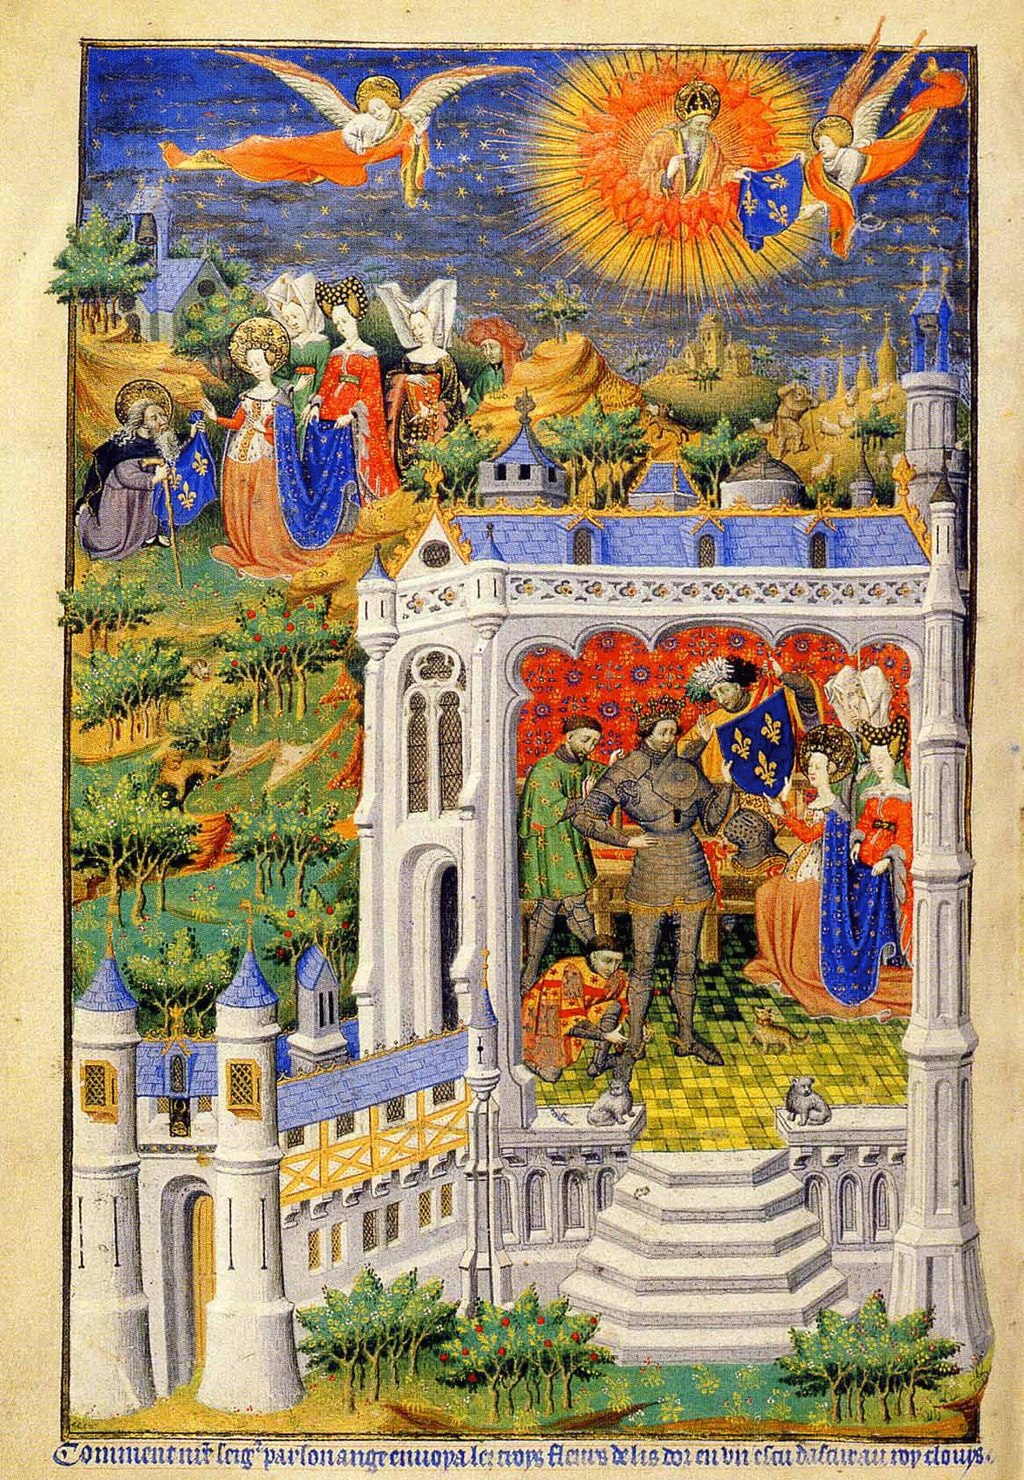 Vua Clovis nhận đóa bách hợp, tác giả Heurse Bedford, sáng tác trong thế kỷ 15.